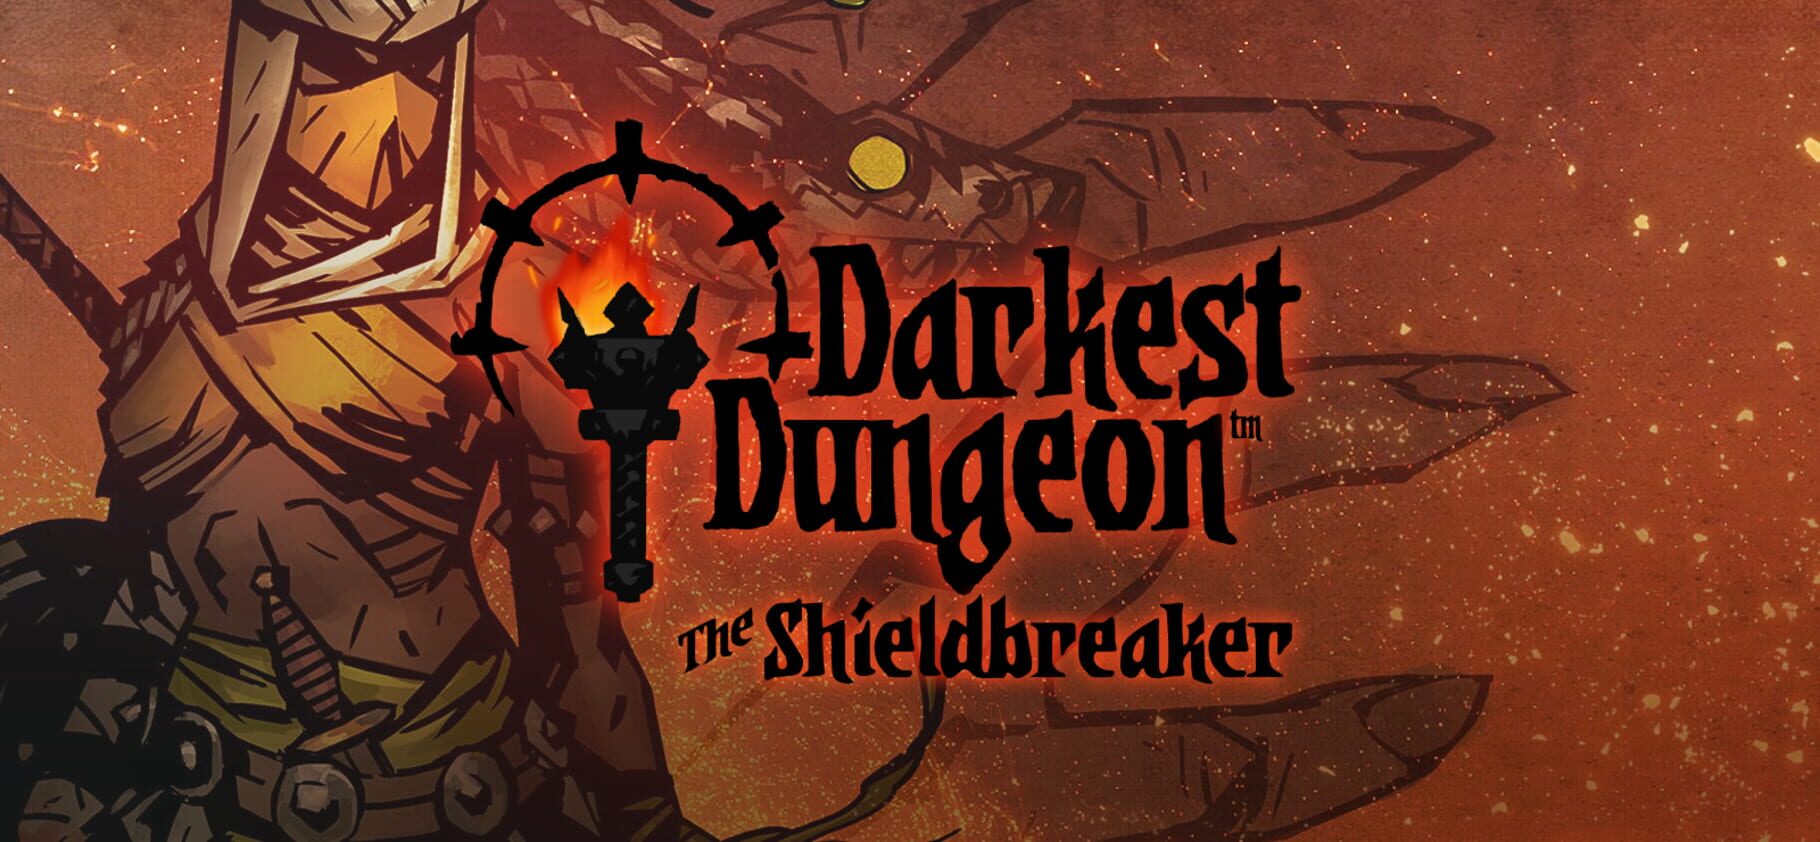 Darkest Dungeon: The Shieldbreaker artwork